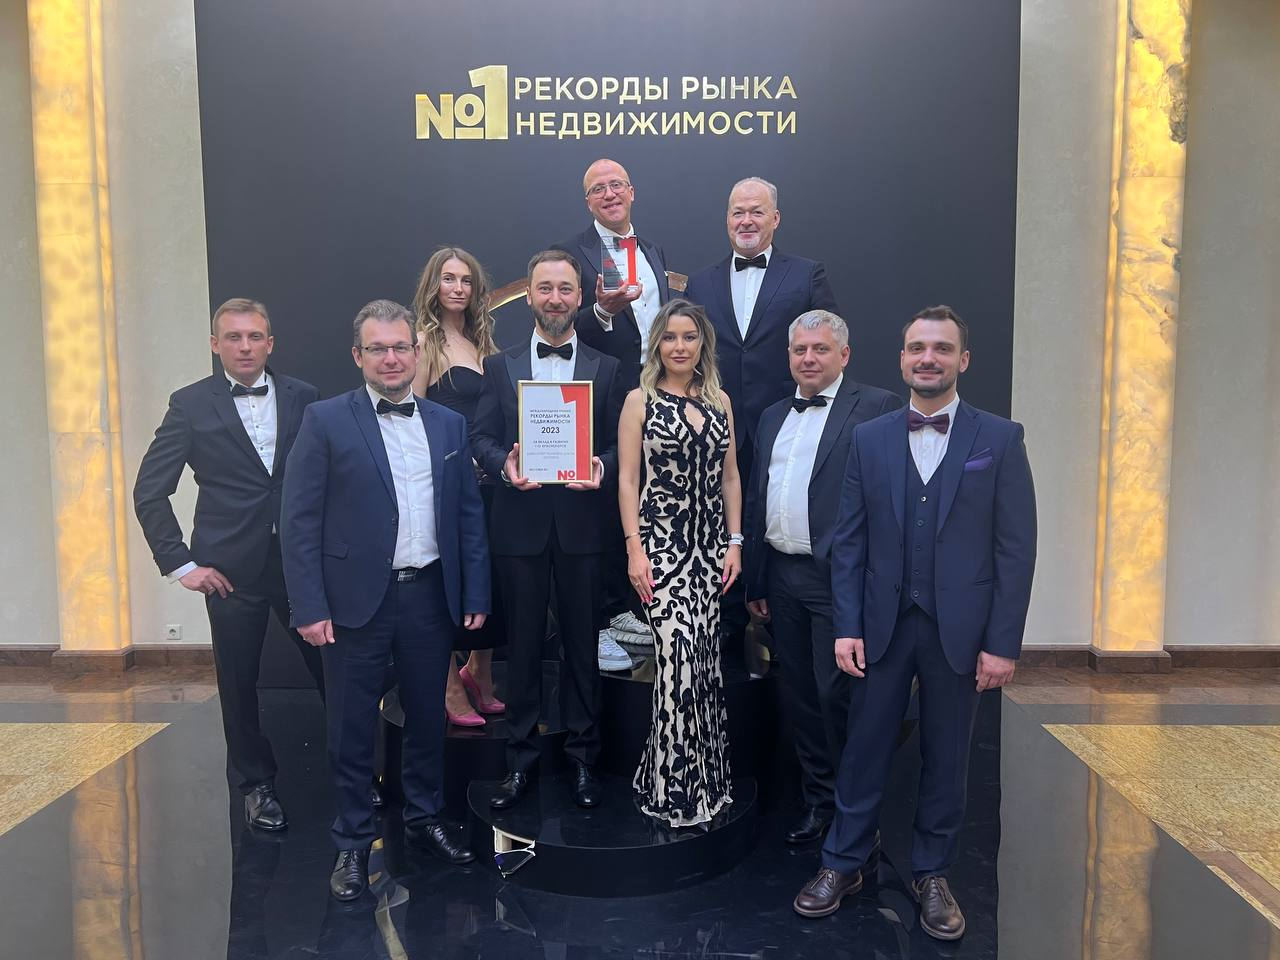 Миниполис 8 Клёнов стал победителем премии «Рекорды рынка недвижимости»